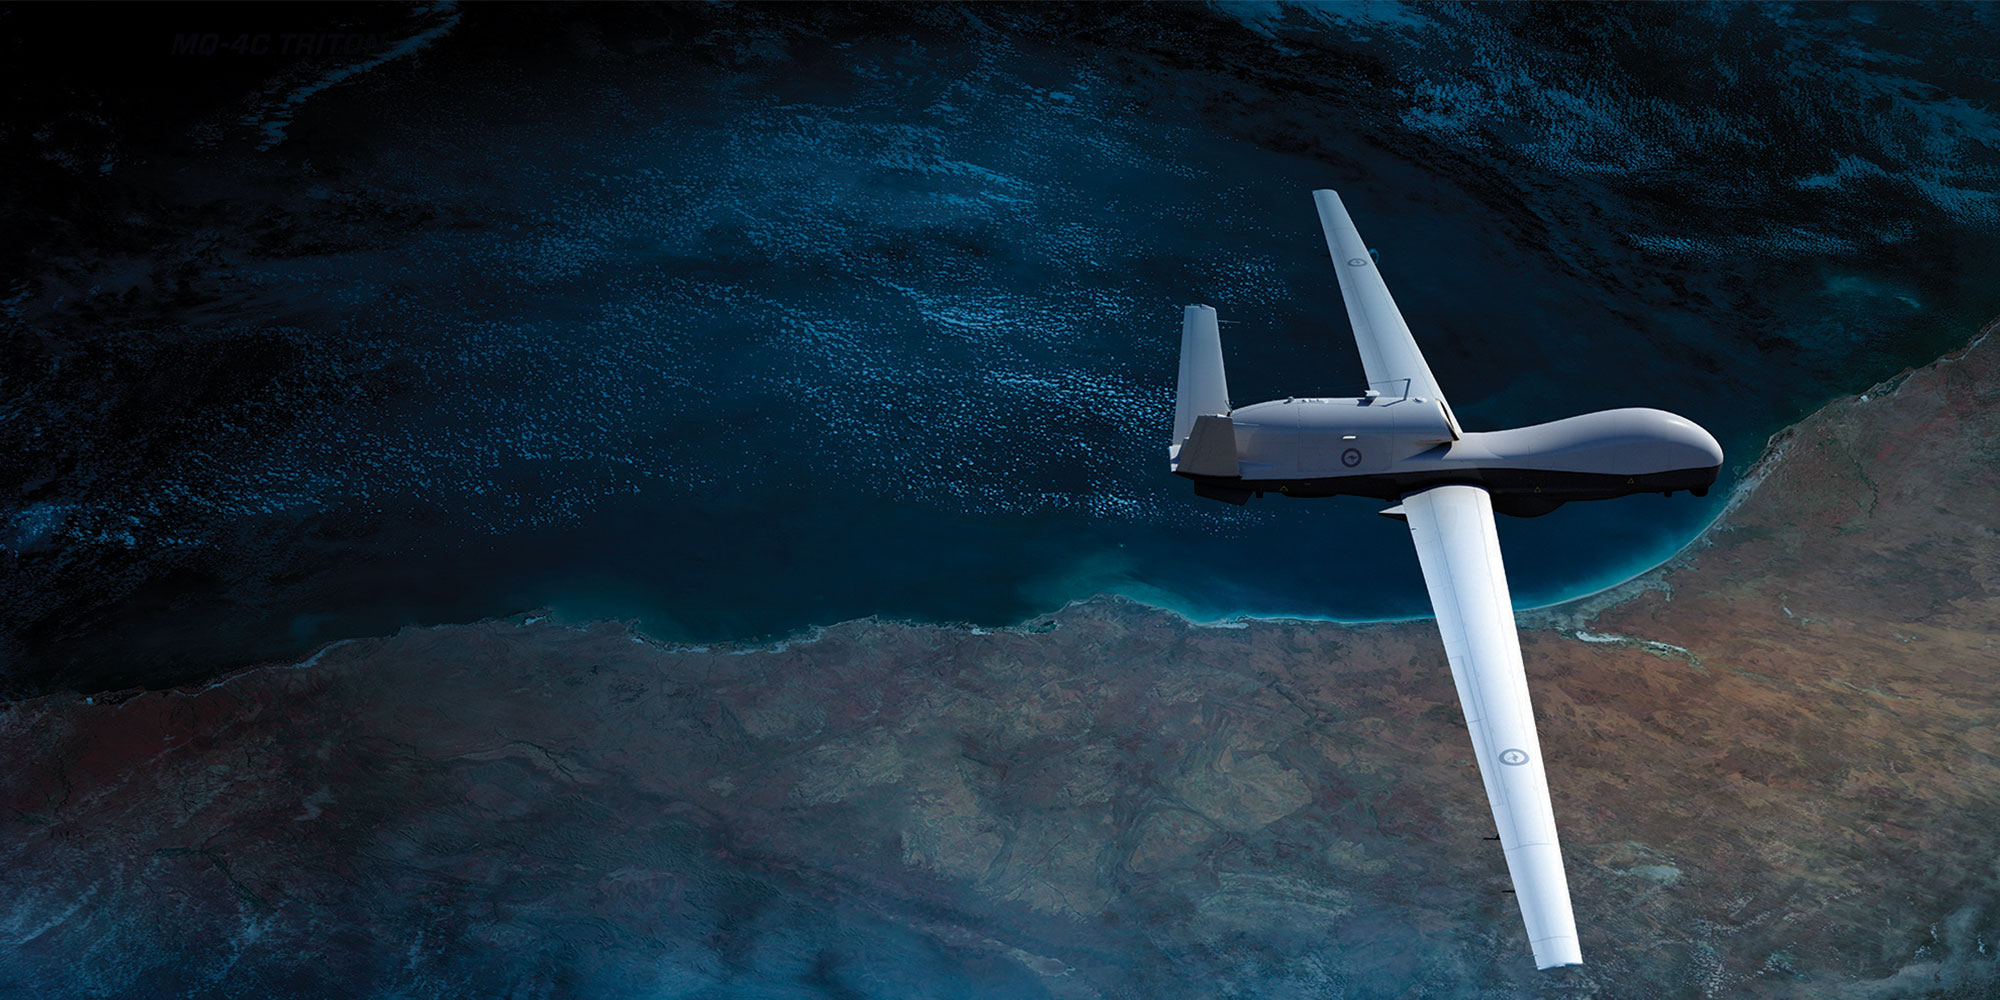 TECNOLOGIA: Apresentamos o Triton, um drone gigantesco e altamente resistente, concebido para monitorizar o Oceano Pacífico